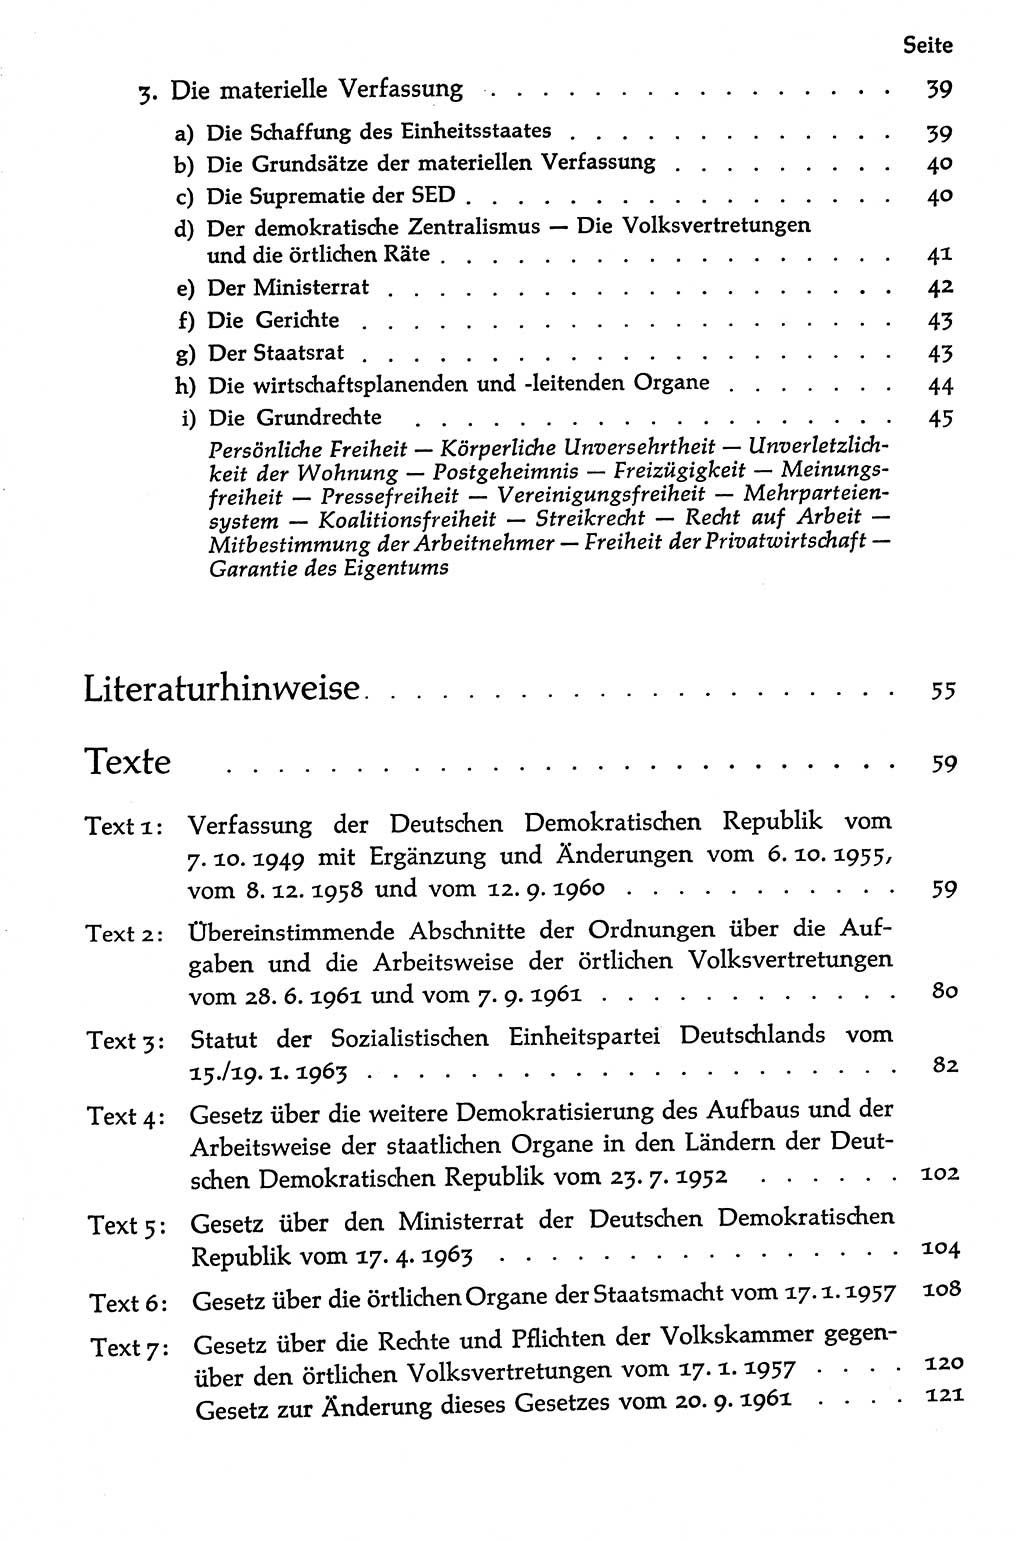 Volksdemokratische Ordnung in Mitteldeutschland [Deutsche Demokratische Republik (DDR)], Texte zur verfassungsrechtlichen Situation 1963, Seite 6 (Volksdem. Ordn. Md. DDR 1963, S. 6)